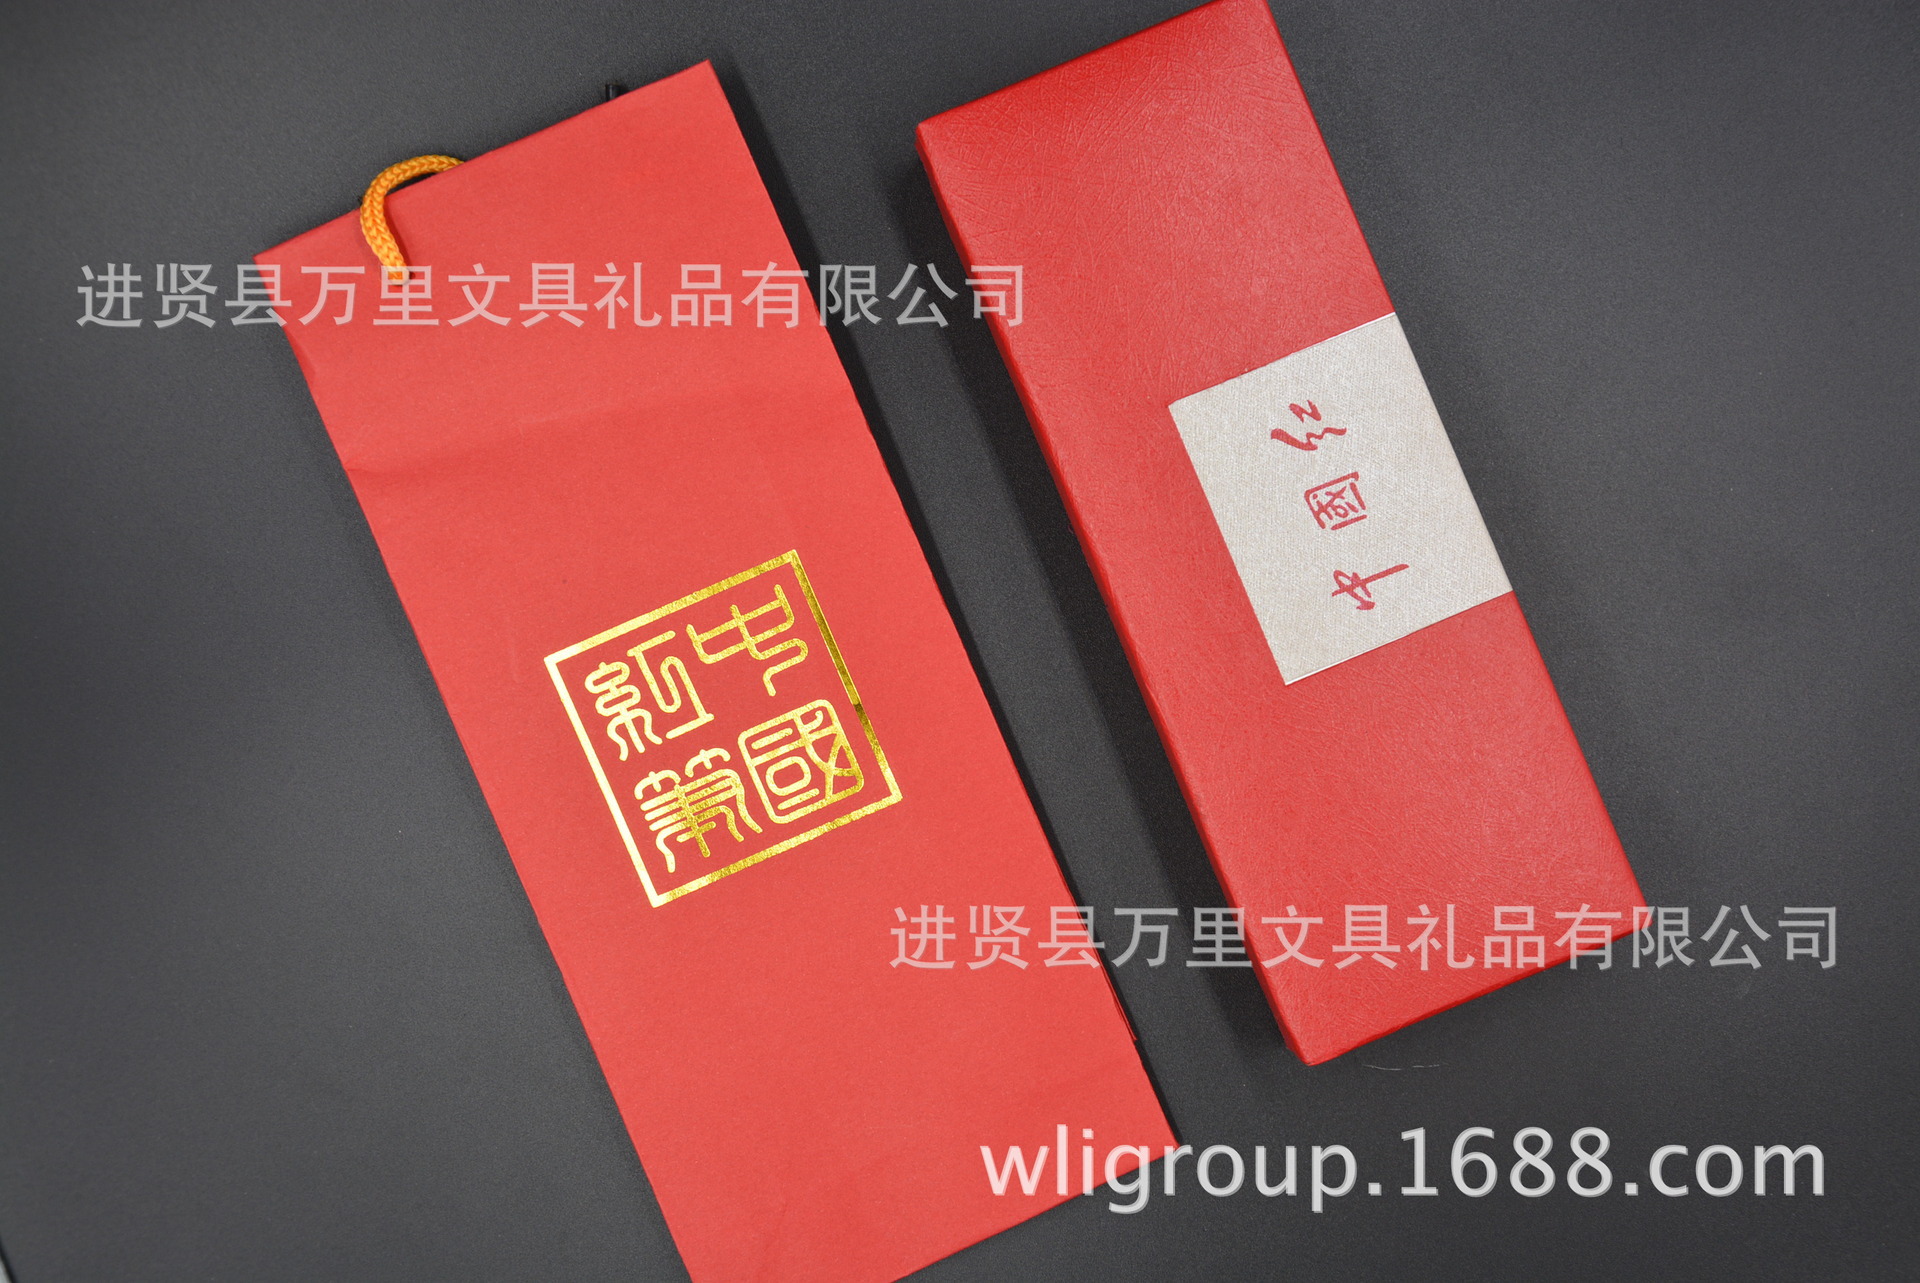 万里集团直营笔盒 节日赠送钢笔盒 青花瓷钢笔盒 中国红笔盒 推广